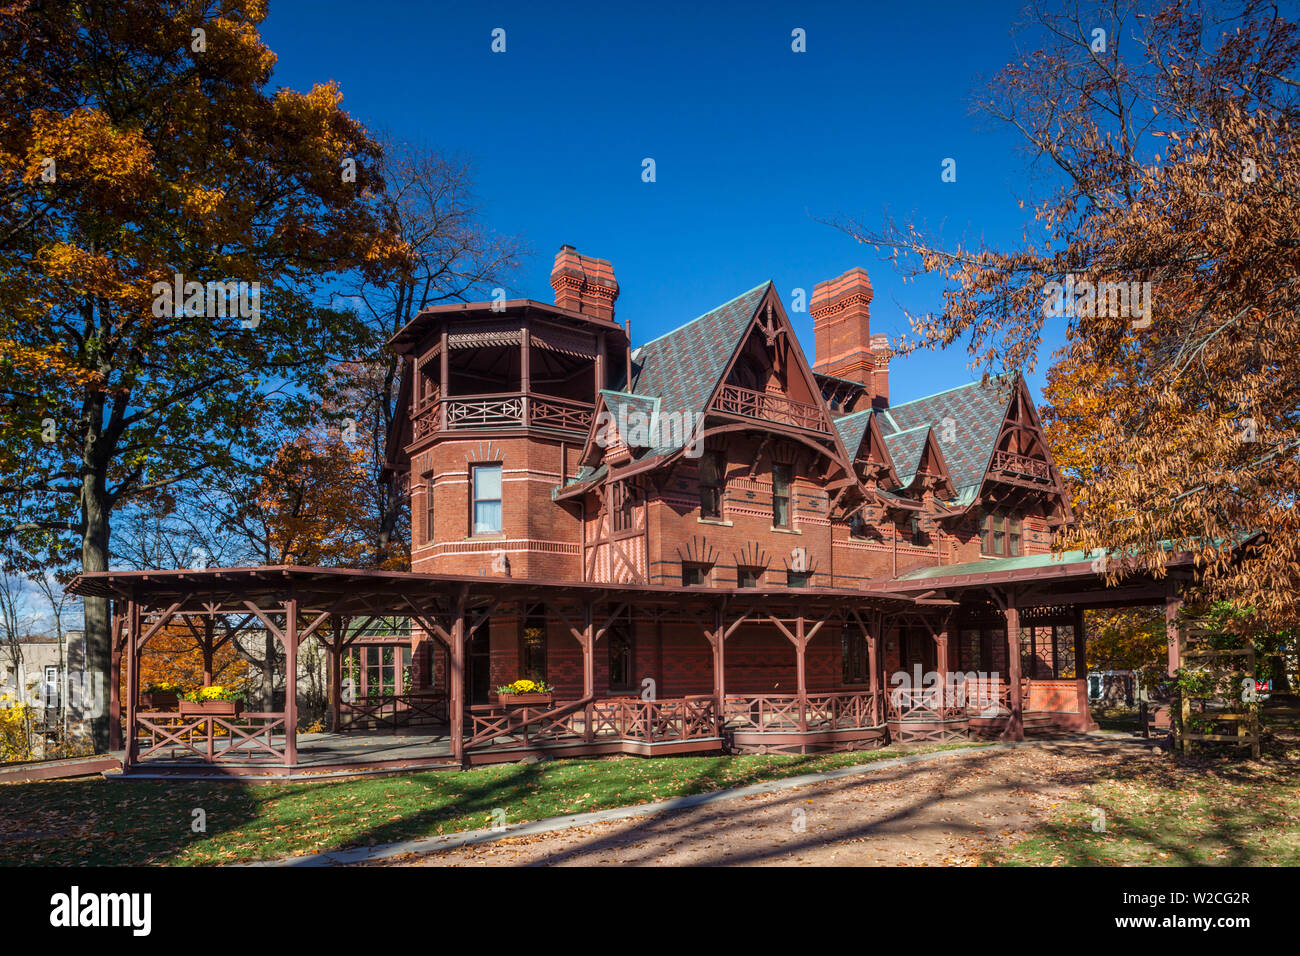 USA, Connecticut, Hartford, Mark Twain House, ehemalige Wohnhaus des berühmten amerikanischen Schriftsteller Mark Twain, Herbst Stockfoto